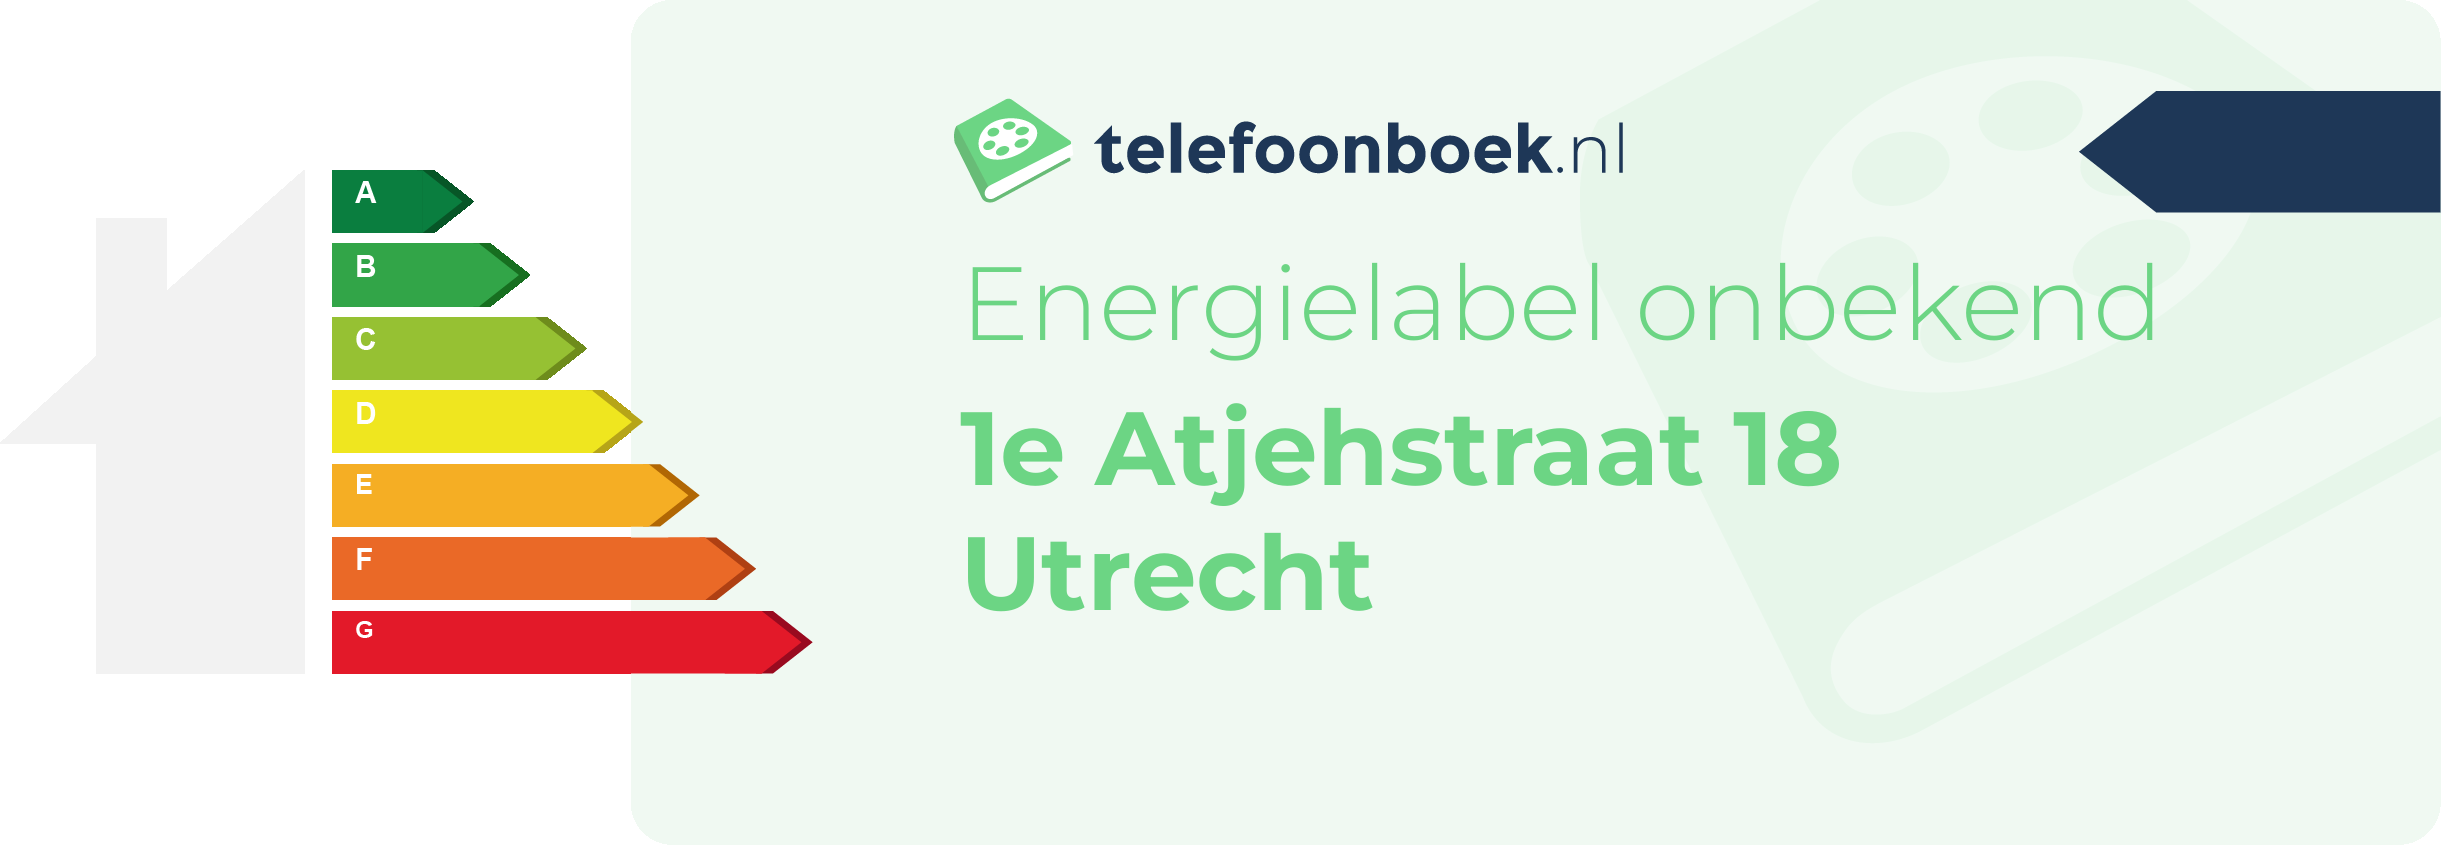 Energielabel 1e Atjehstraat 18 Utrecht